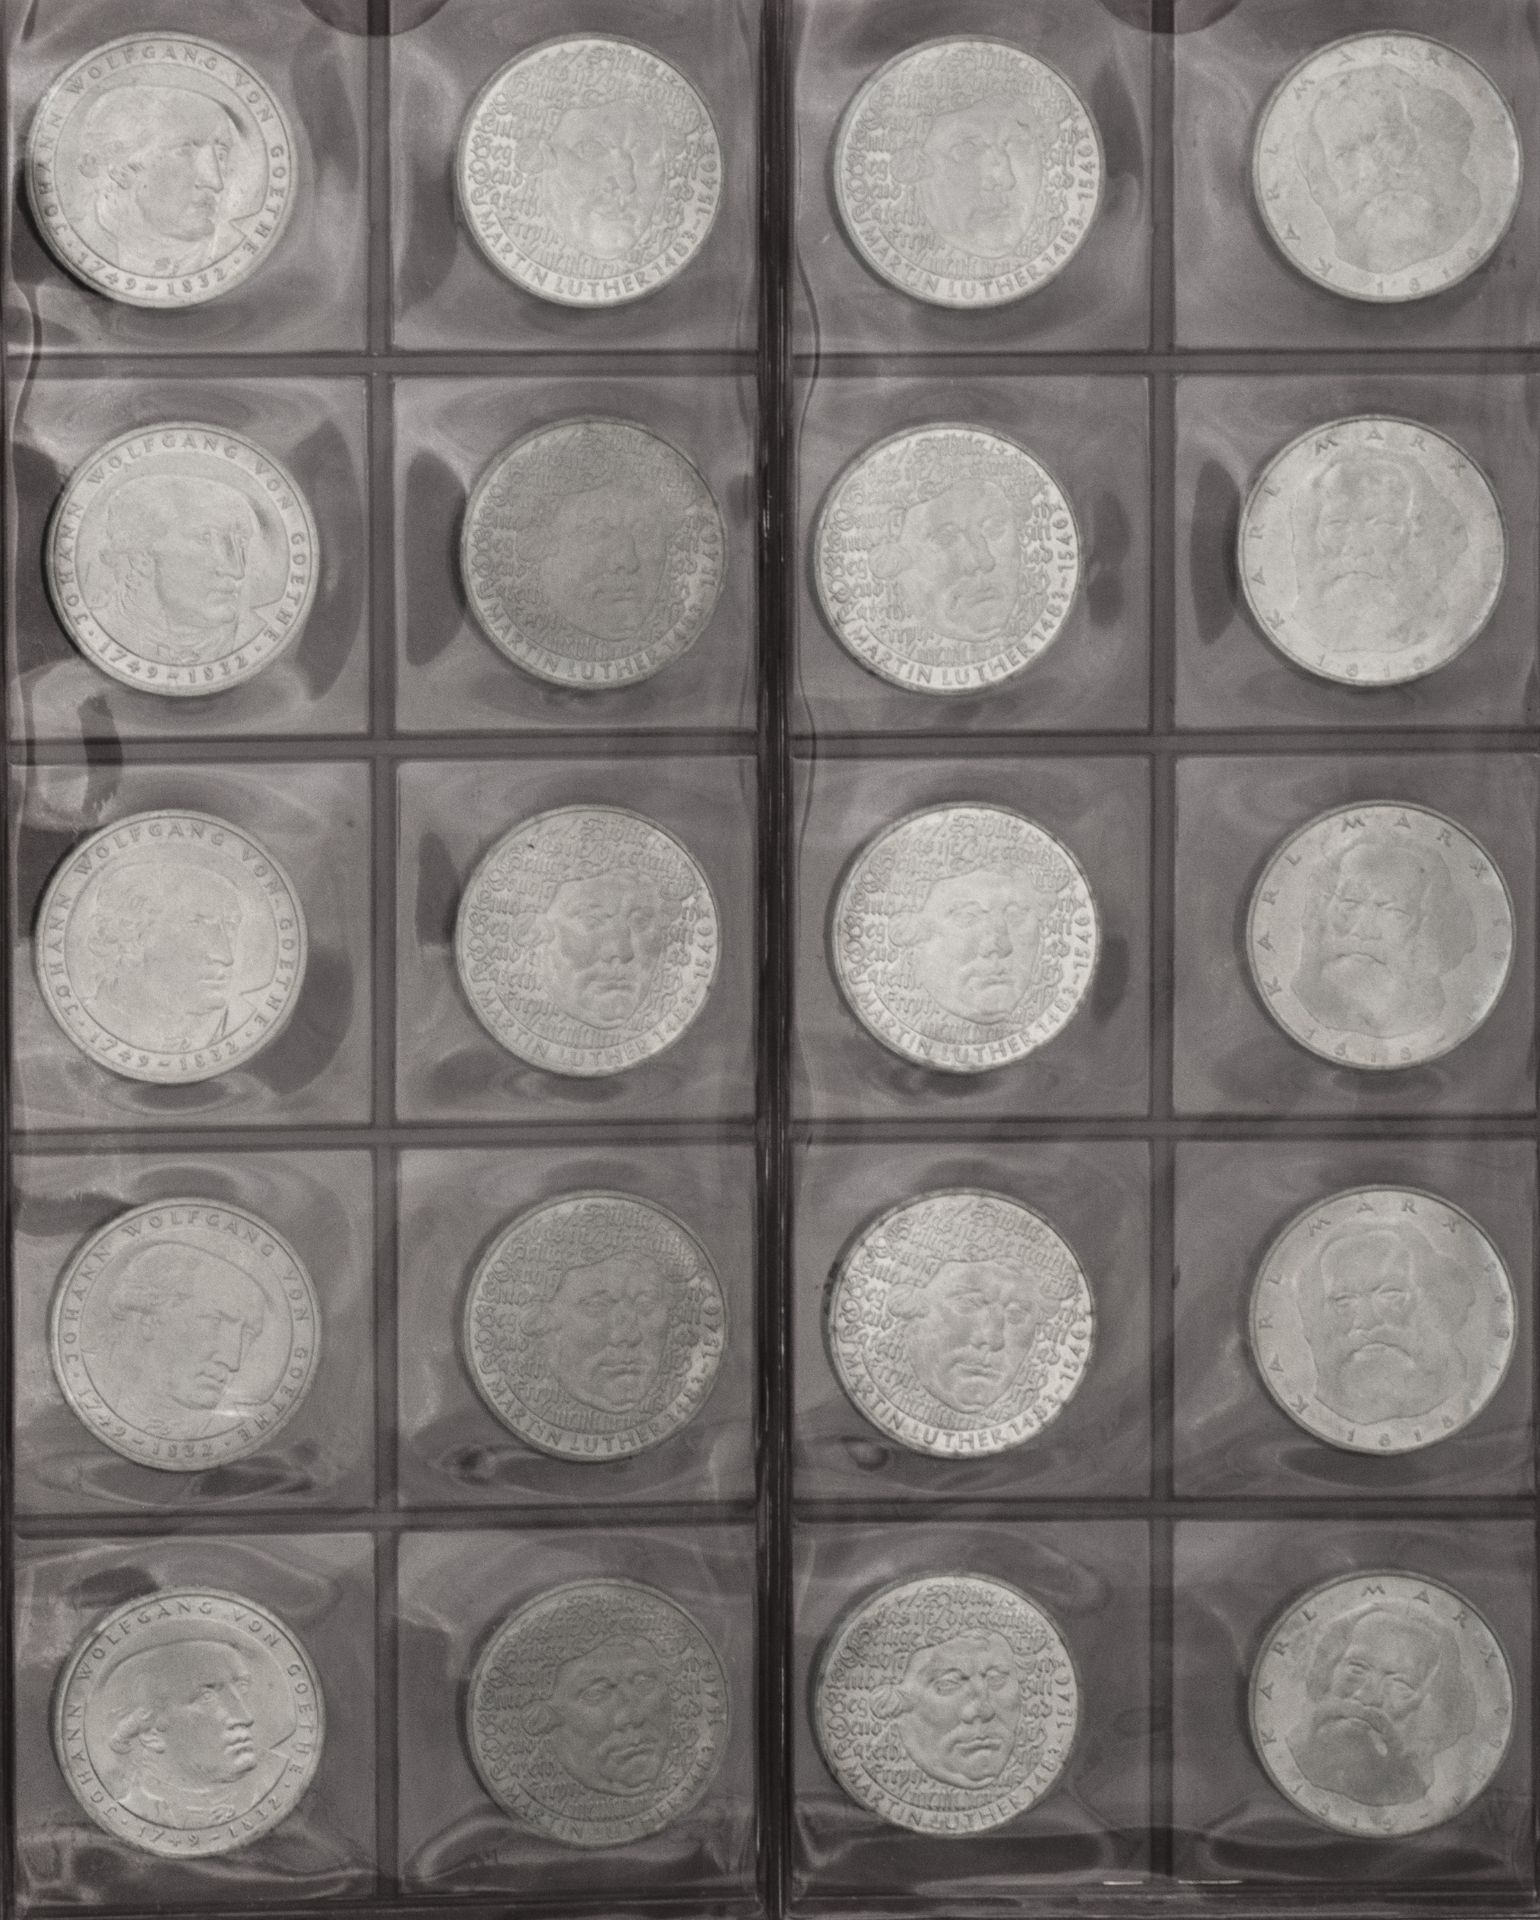 BRD, Sammlung aus 130 Stück 5.- DM - Münzen. Im Sammelalbum.